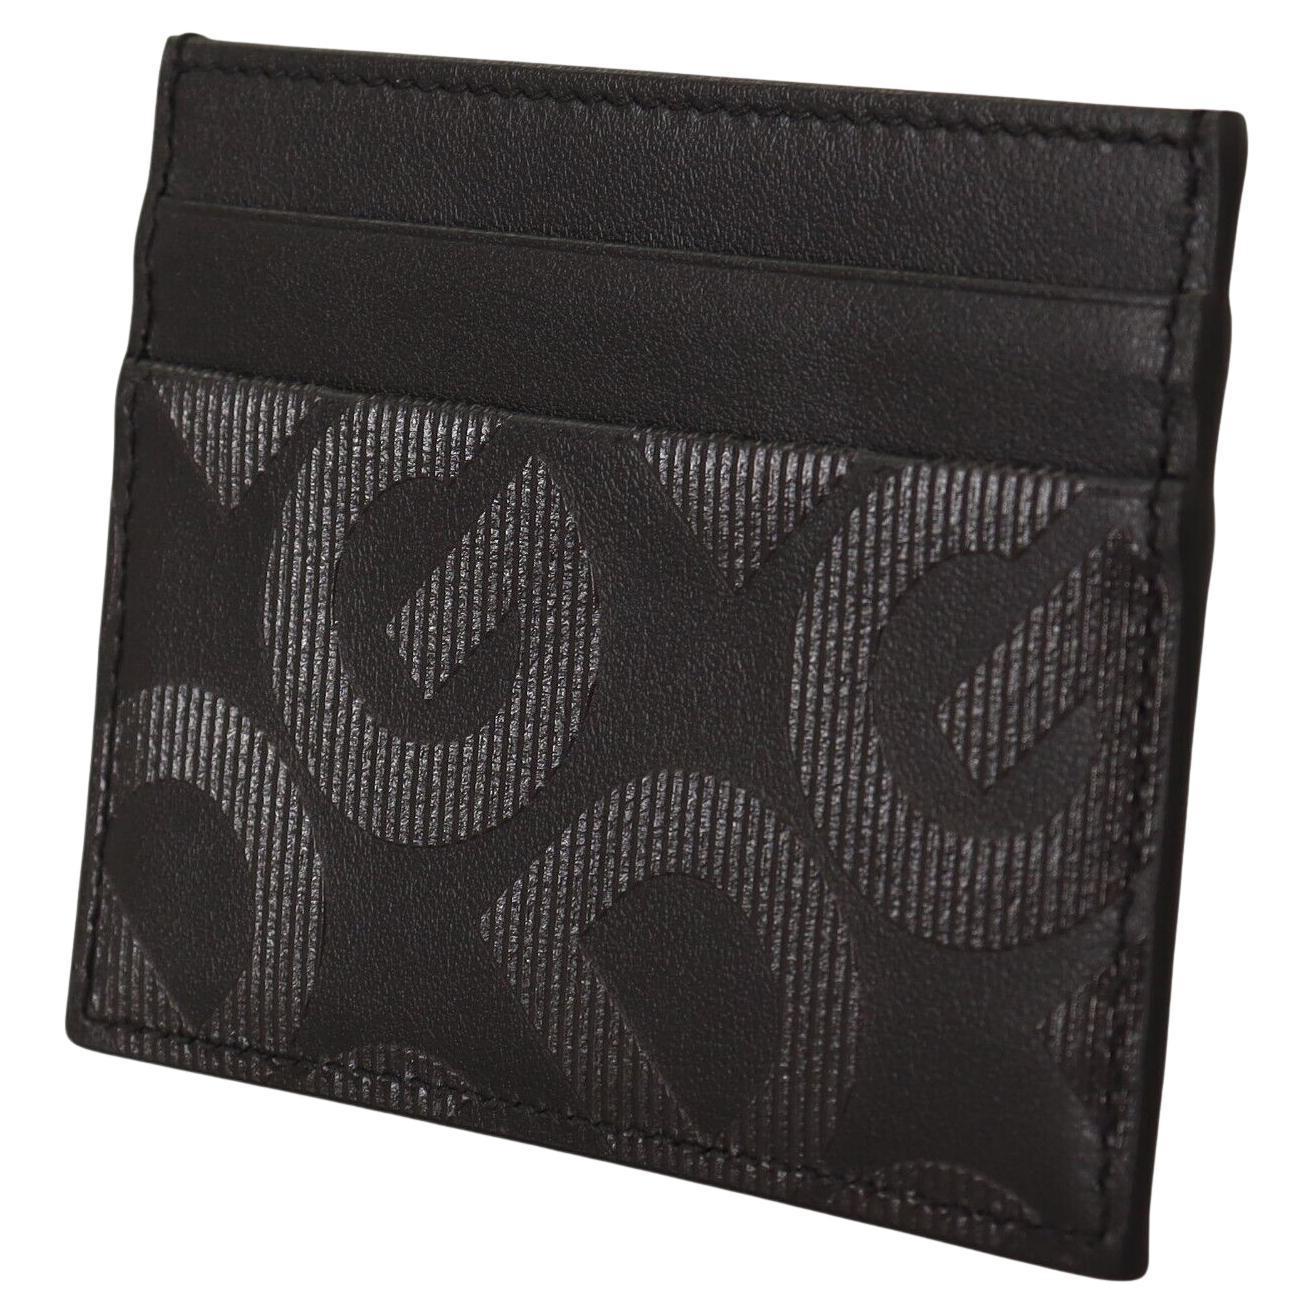 Dolce & Gabbana Black Leather Wallet Cardholder Men Purse with DG Logo For Sale